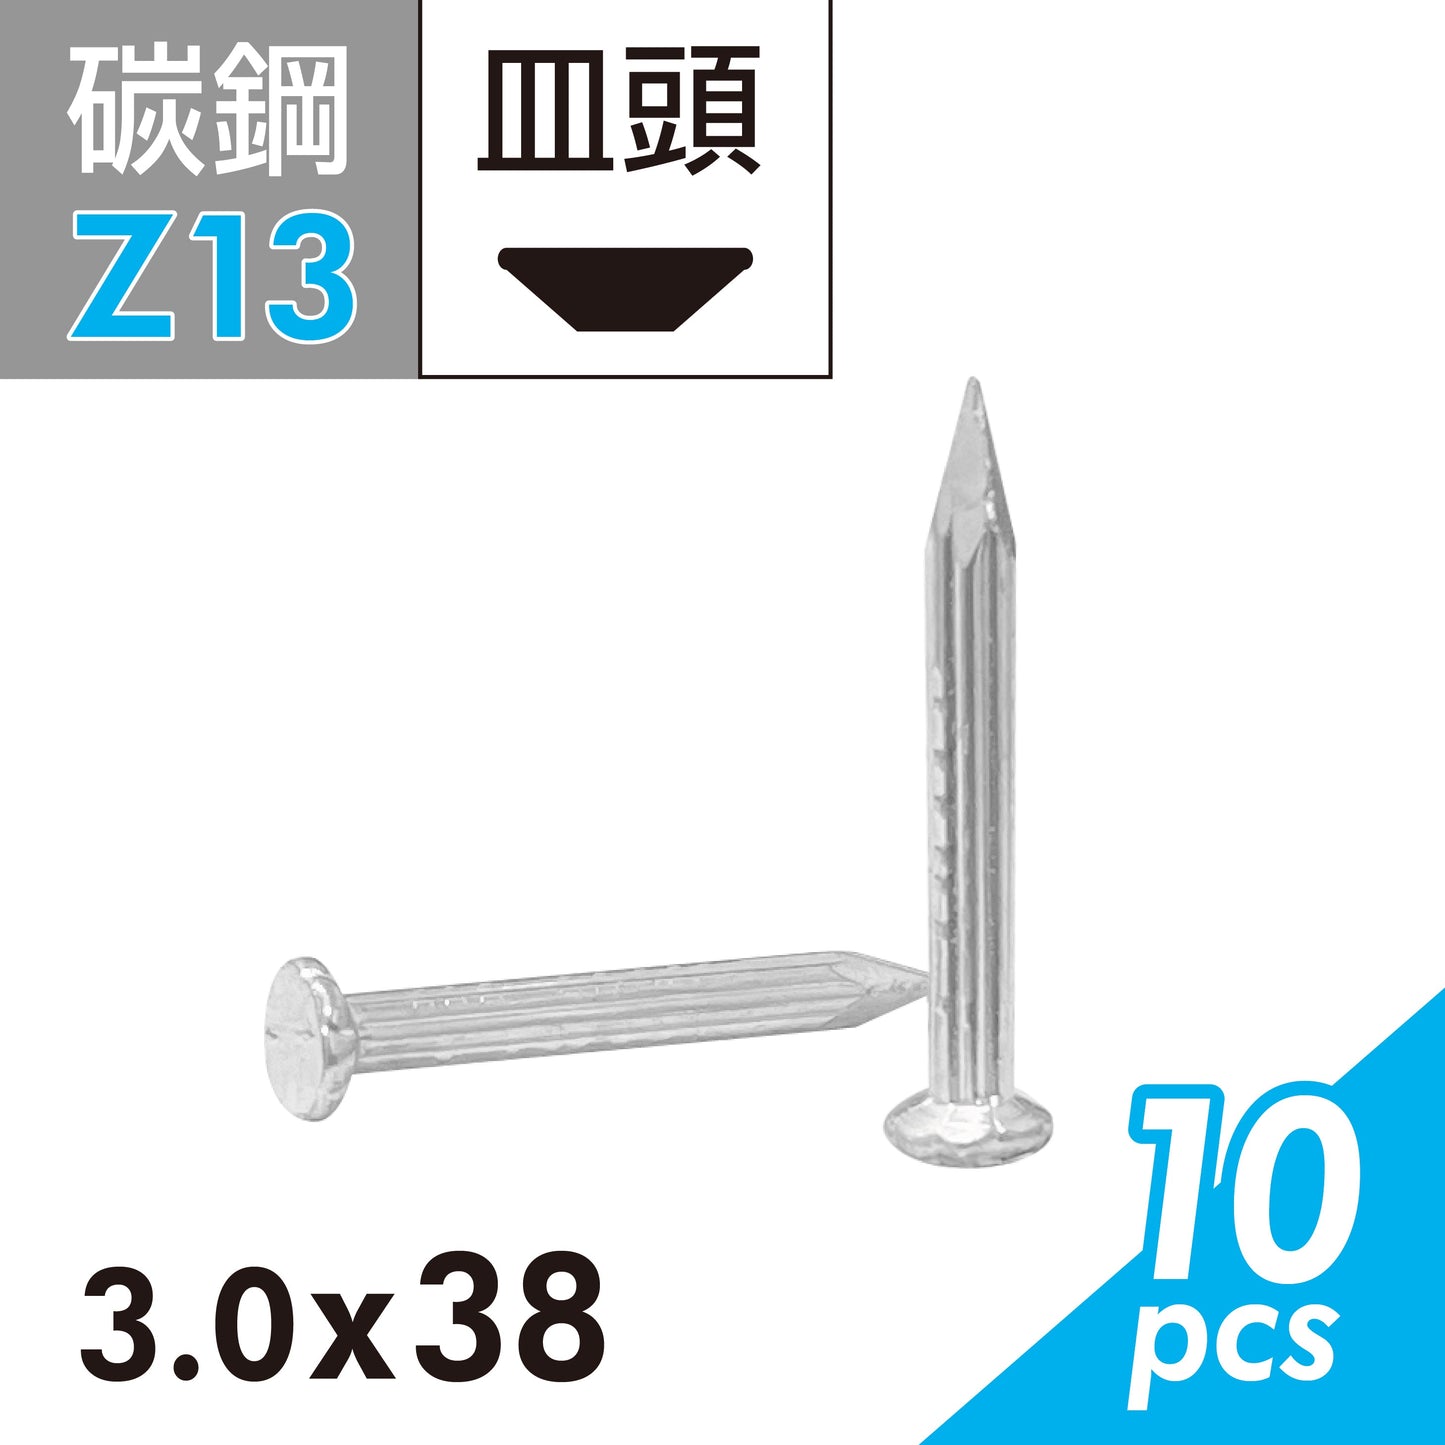 鋼釘 水泥釘 水泥鋼釘 釘子 鐵釘 水泥 混泥土適用 台灣製造 (E02D-Z13)